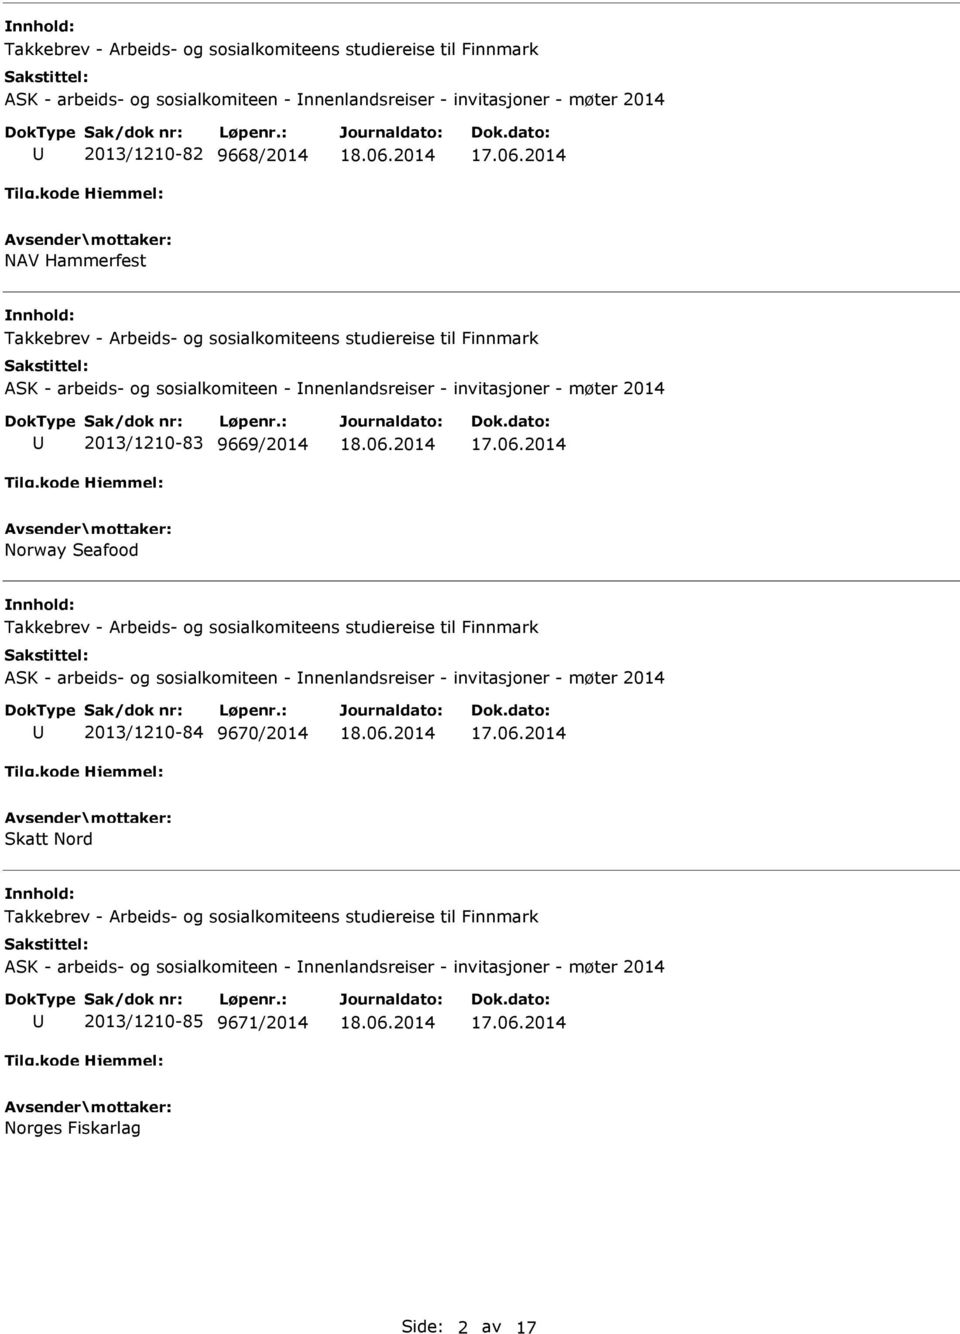 Takkebrev - Arbeids- og sosialkomiteens studiereise til Finnmark ASK - arbeids- og sosialkomiteen - nnenlandsreiser - invitasjoner - møter 2014 2013/1210-84 9670/2014 Skatt Nord